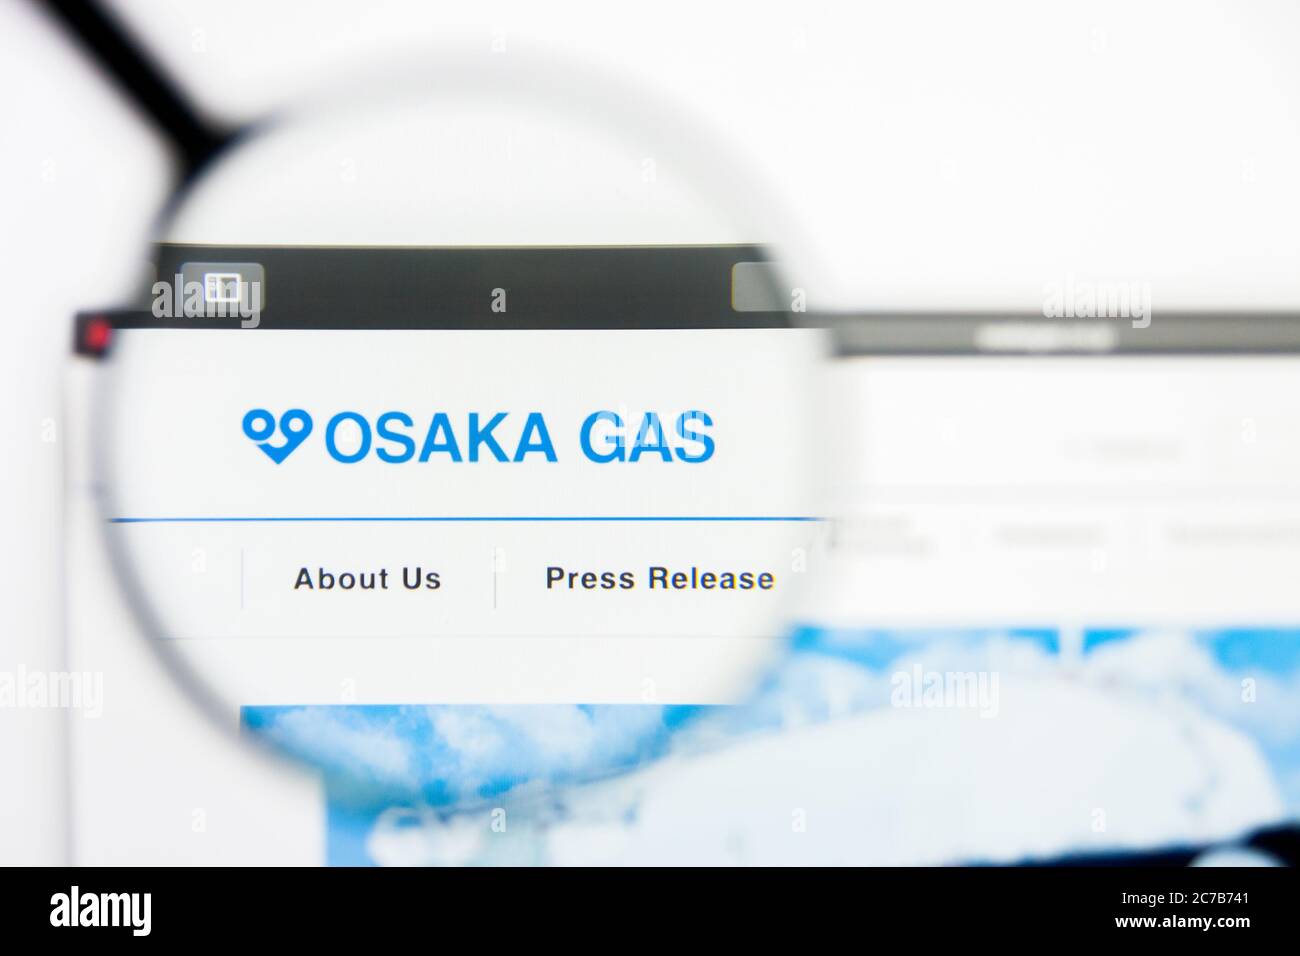 Los Angeles, California, USA - 24 Marzo 2019: Editoriale illustrativo della homepage del sito Web Osaka gas. Logo Osaka gas visibile sullo schermo del display. Foto Stock